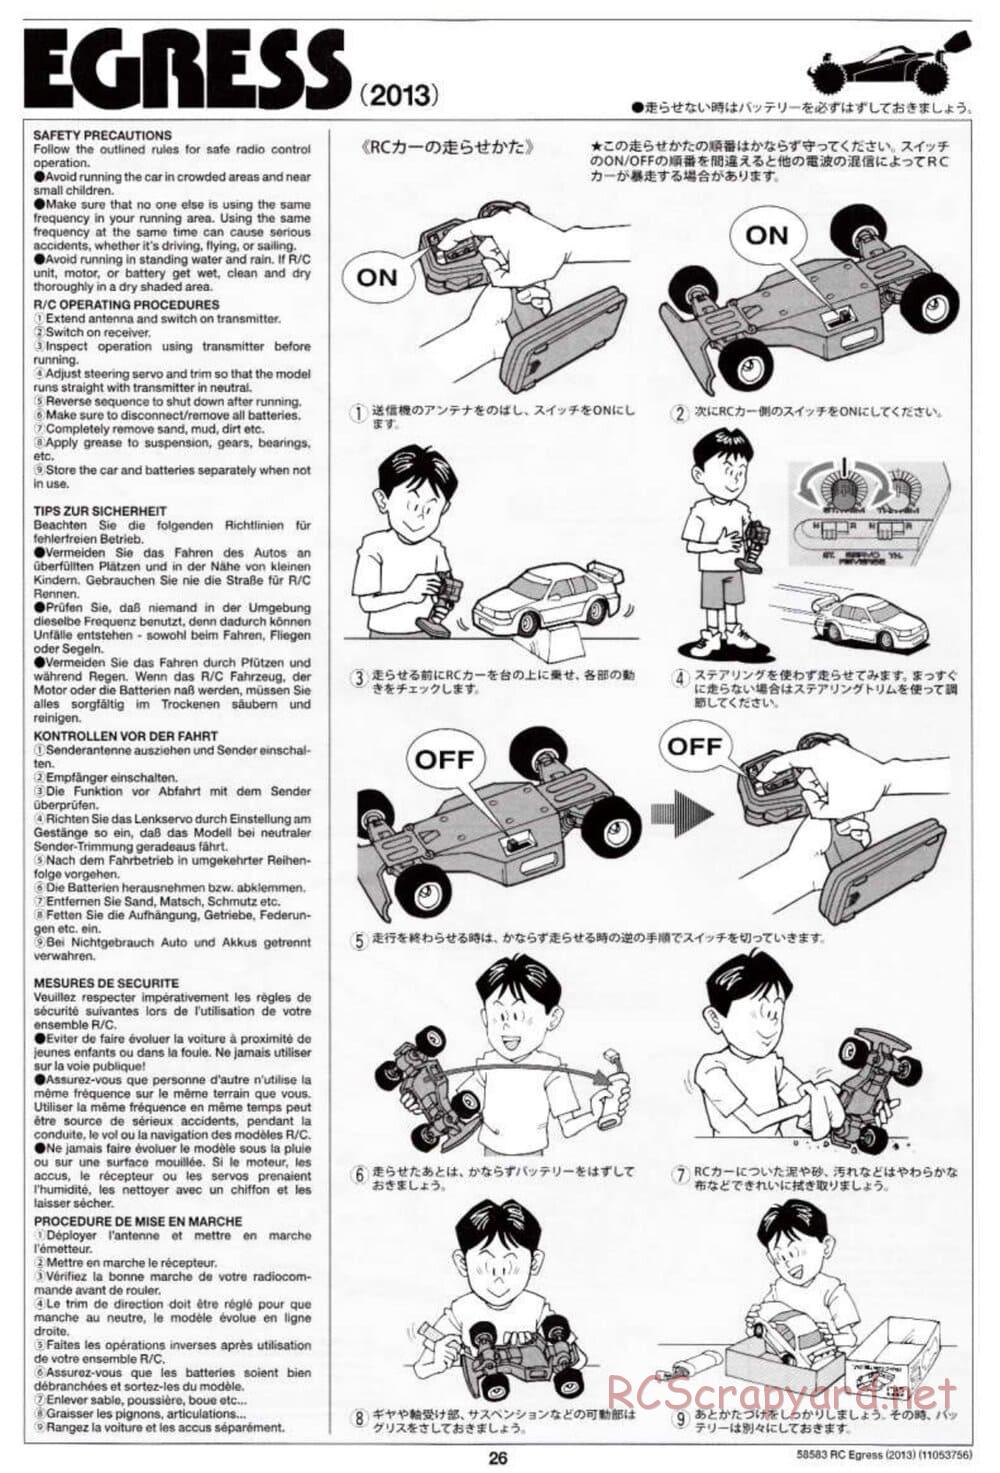 Tamiya - Egress 2013 - AV Chassis - Manual - Page 26